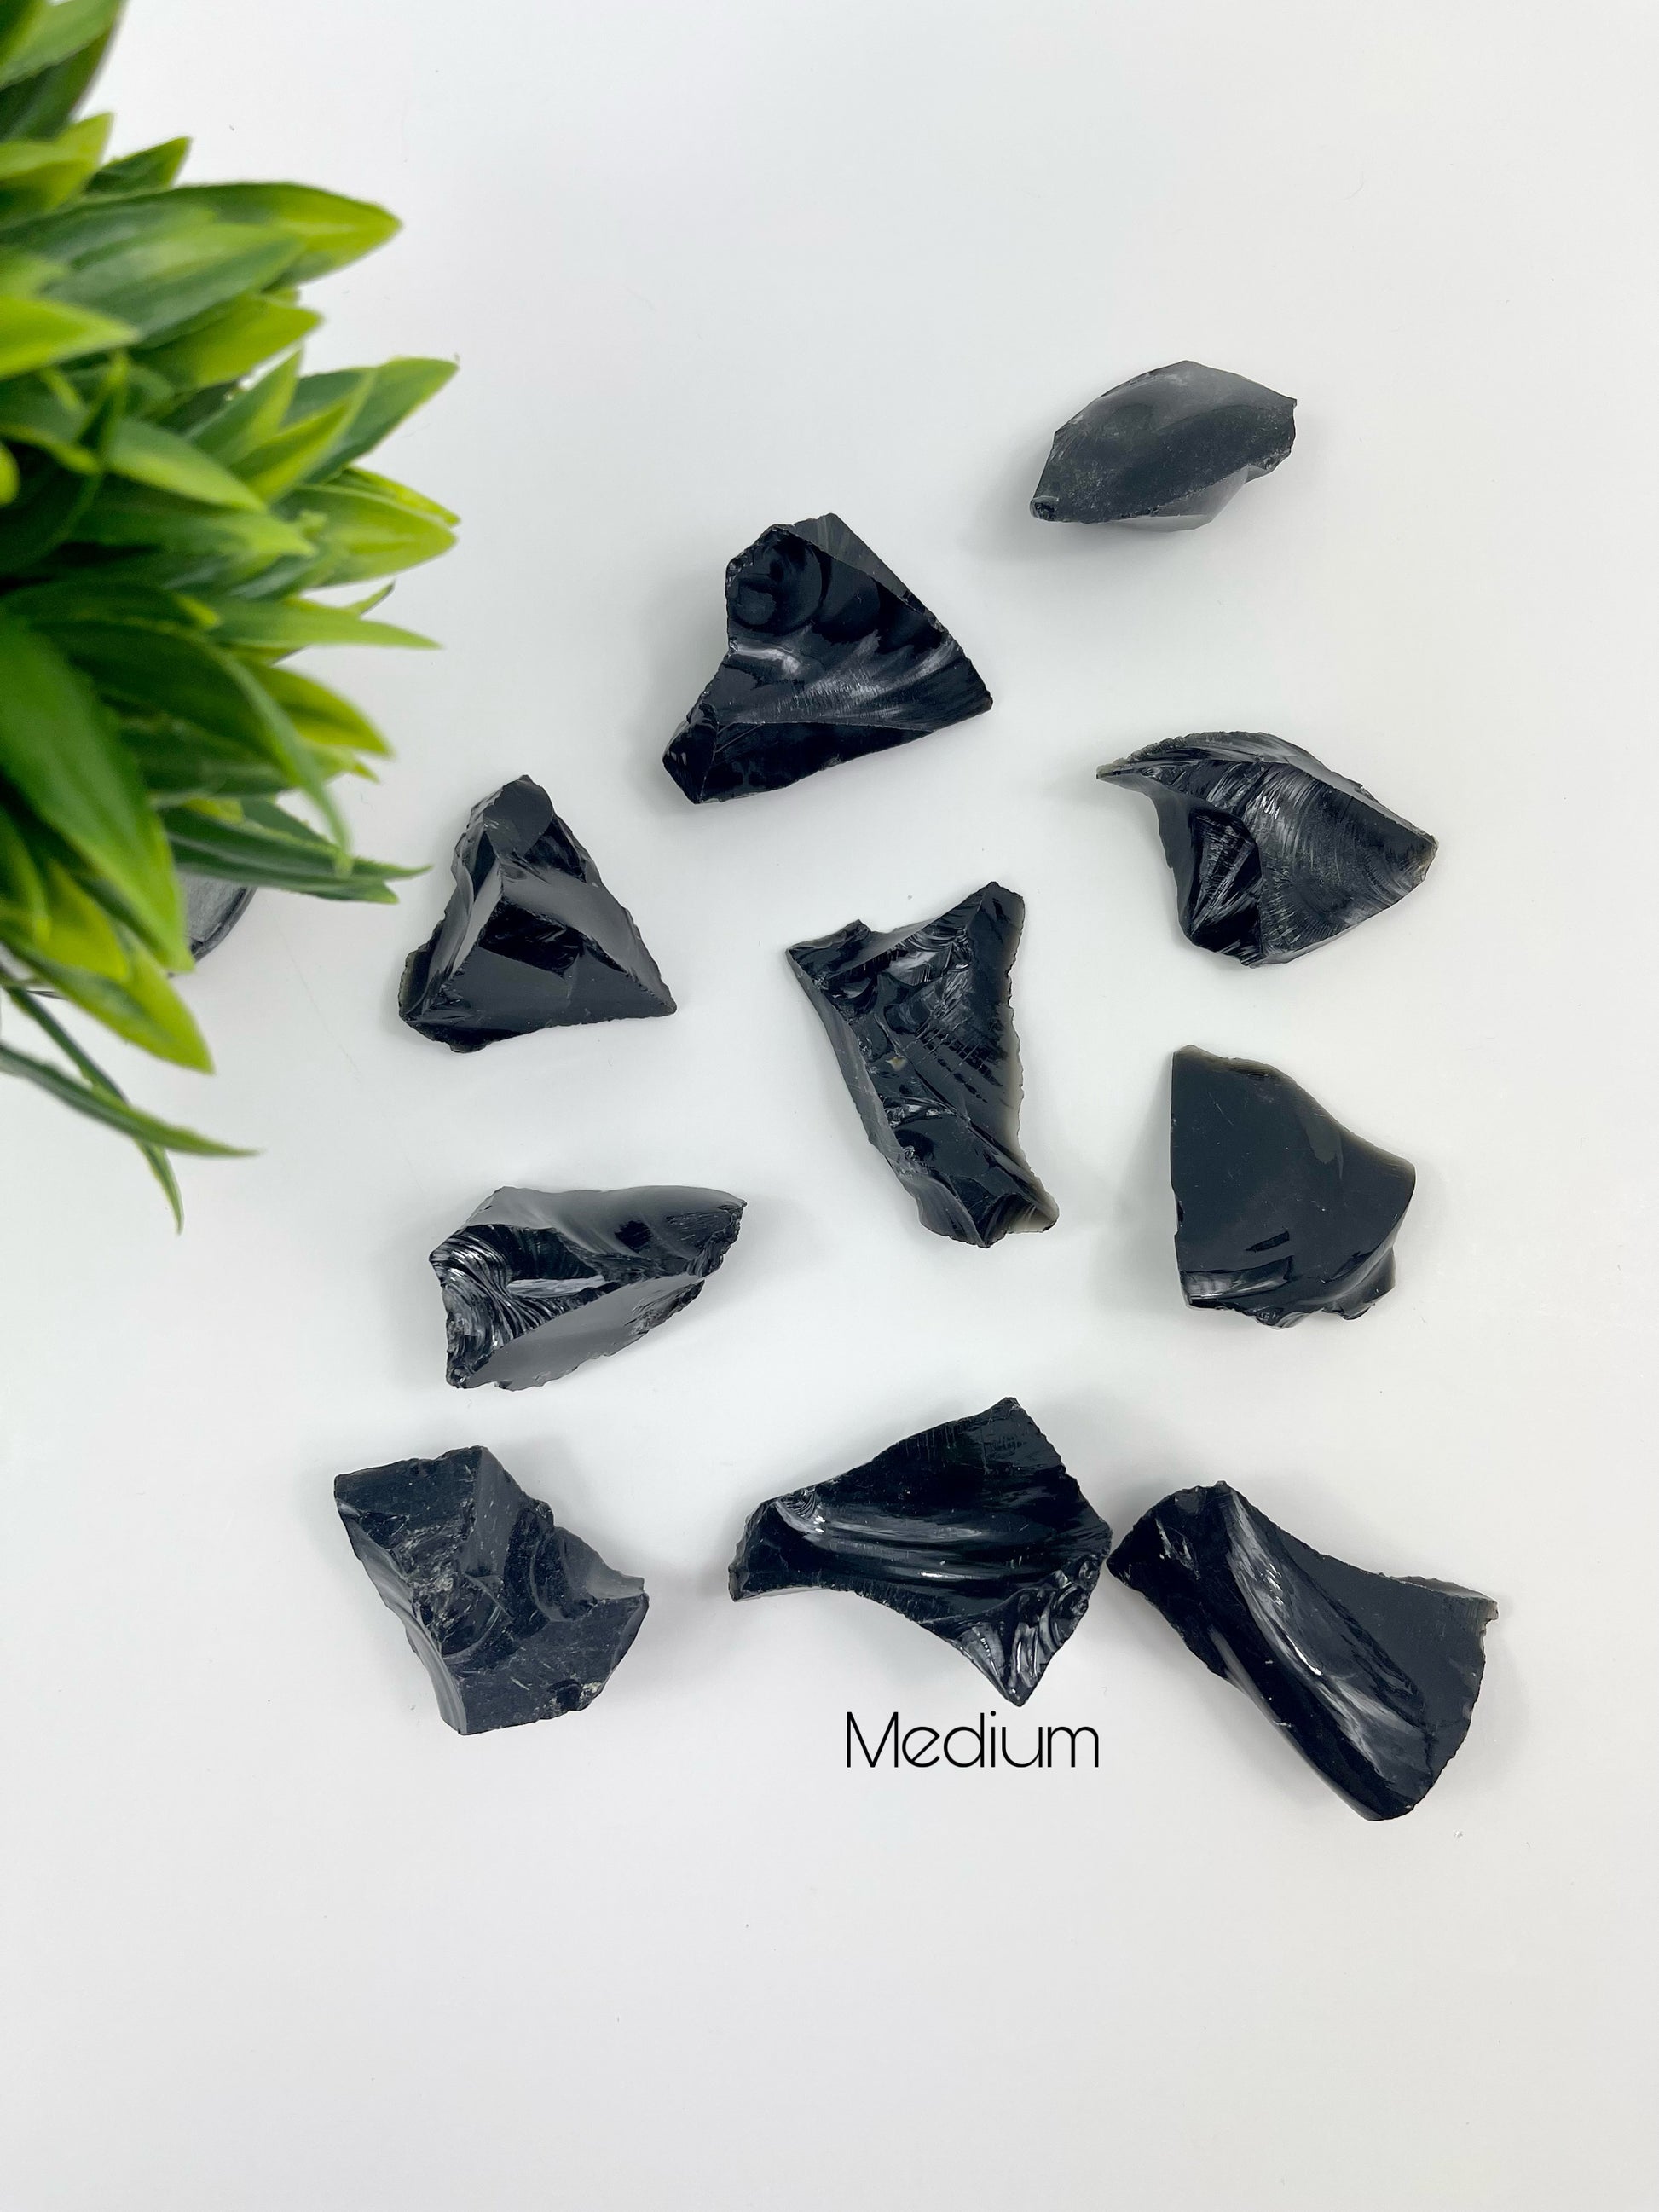 Medium Black Obsidian Raw Pieces